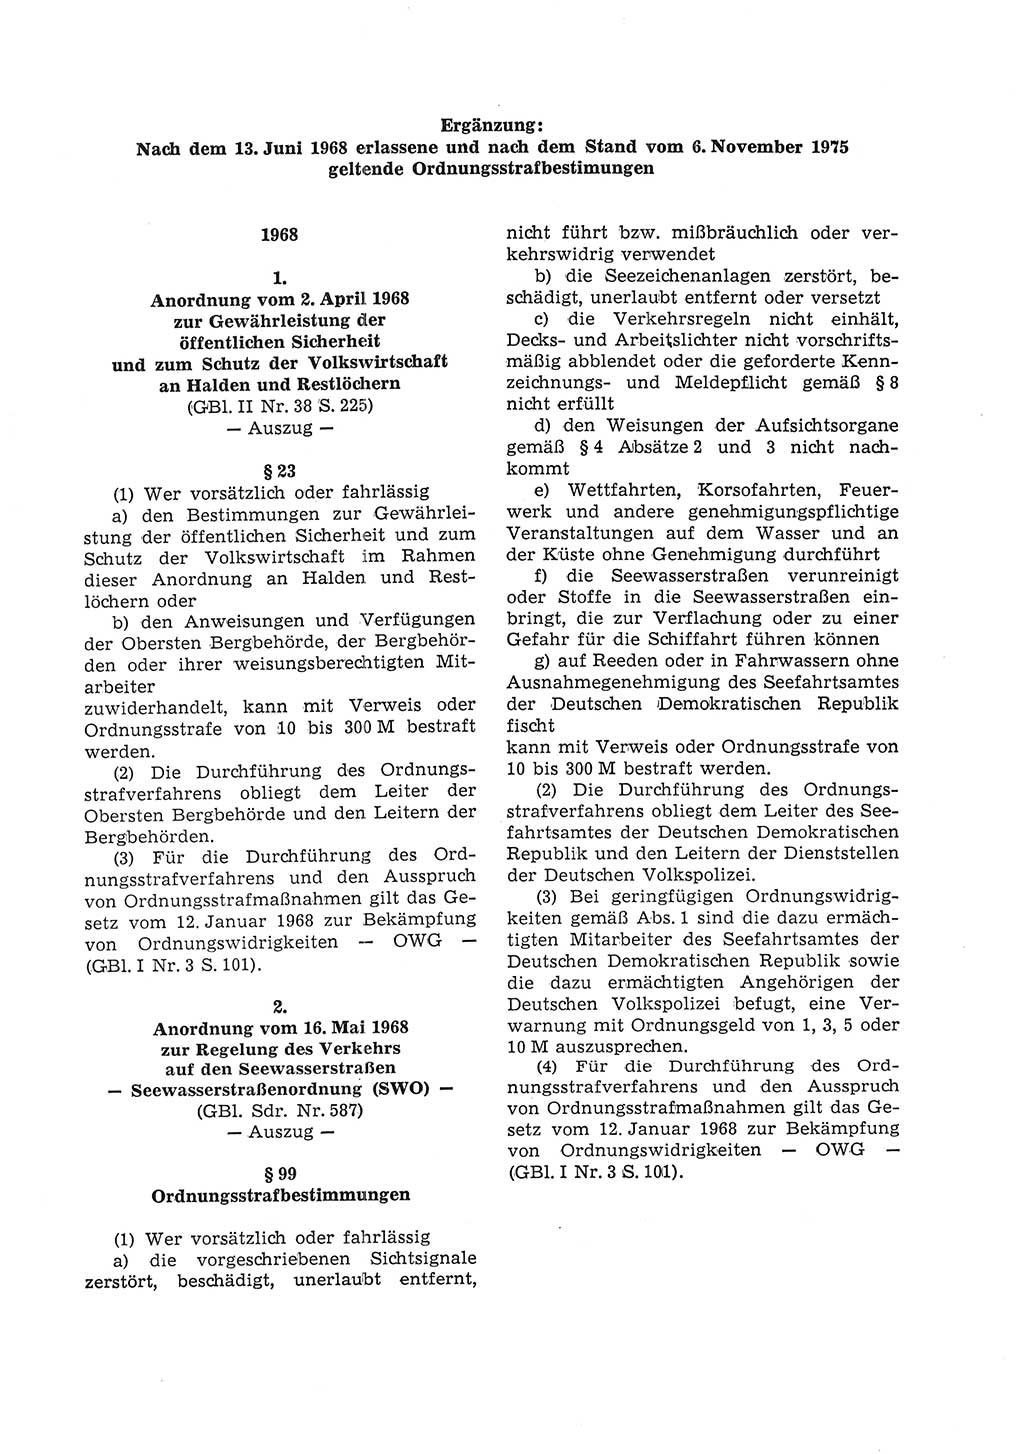 Strafgesetzbuch (StGB) der Deutschen Demokratischen Republik (DDR) und angrenzende Gesetze und Bestimmungen 1975, Seite 175 (StGB DDR Ges. Best. 1975, S. 175)